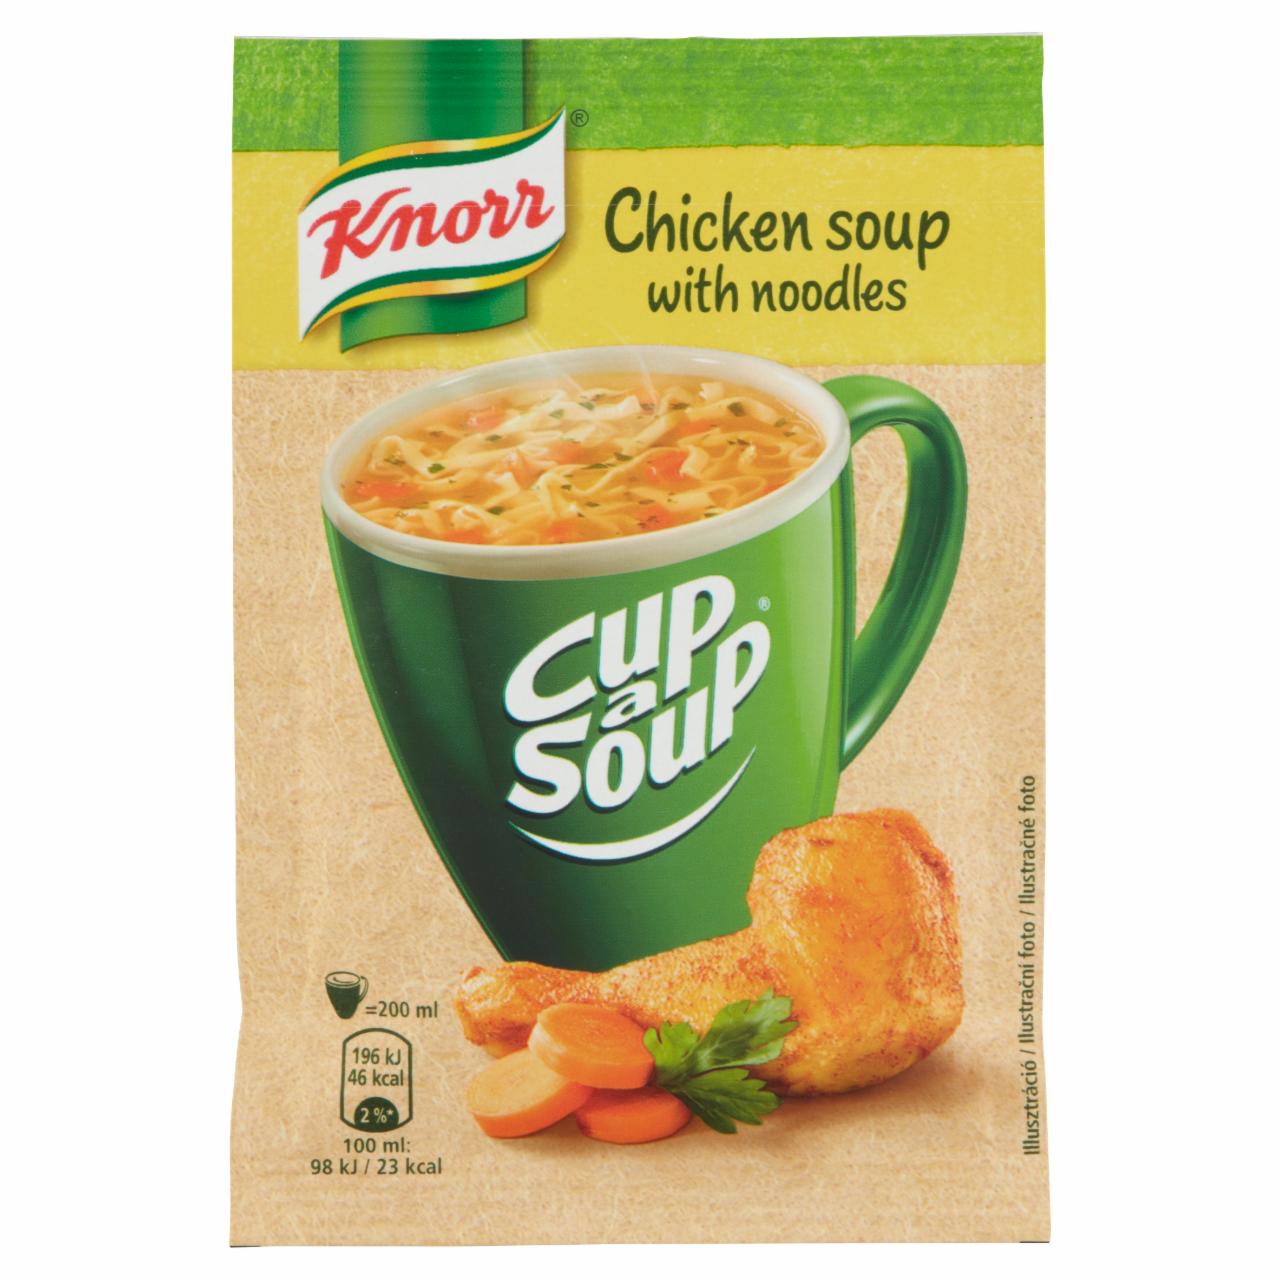 Képek - Knorr Cup a Soup instant tyúkhúsleves tésztával 12 g